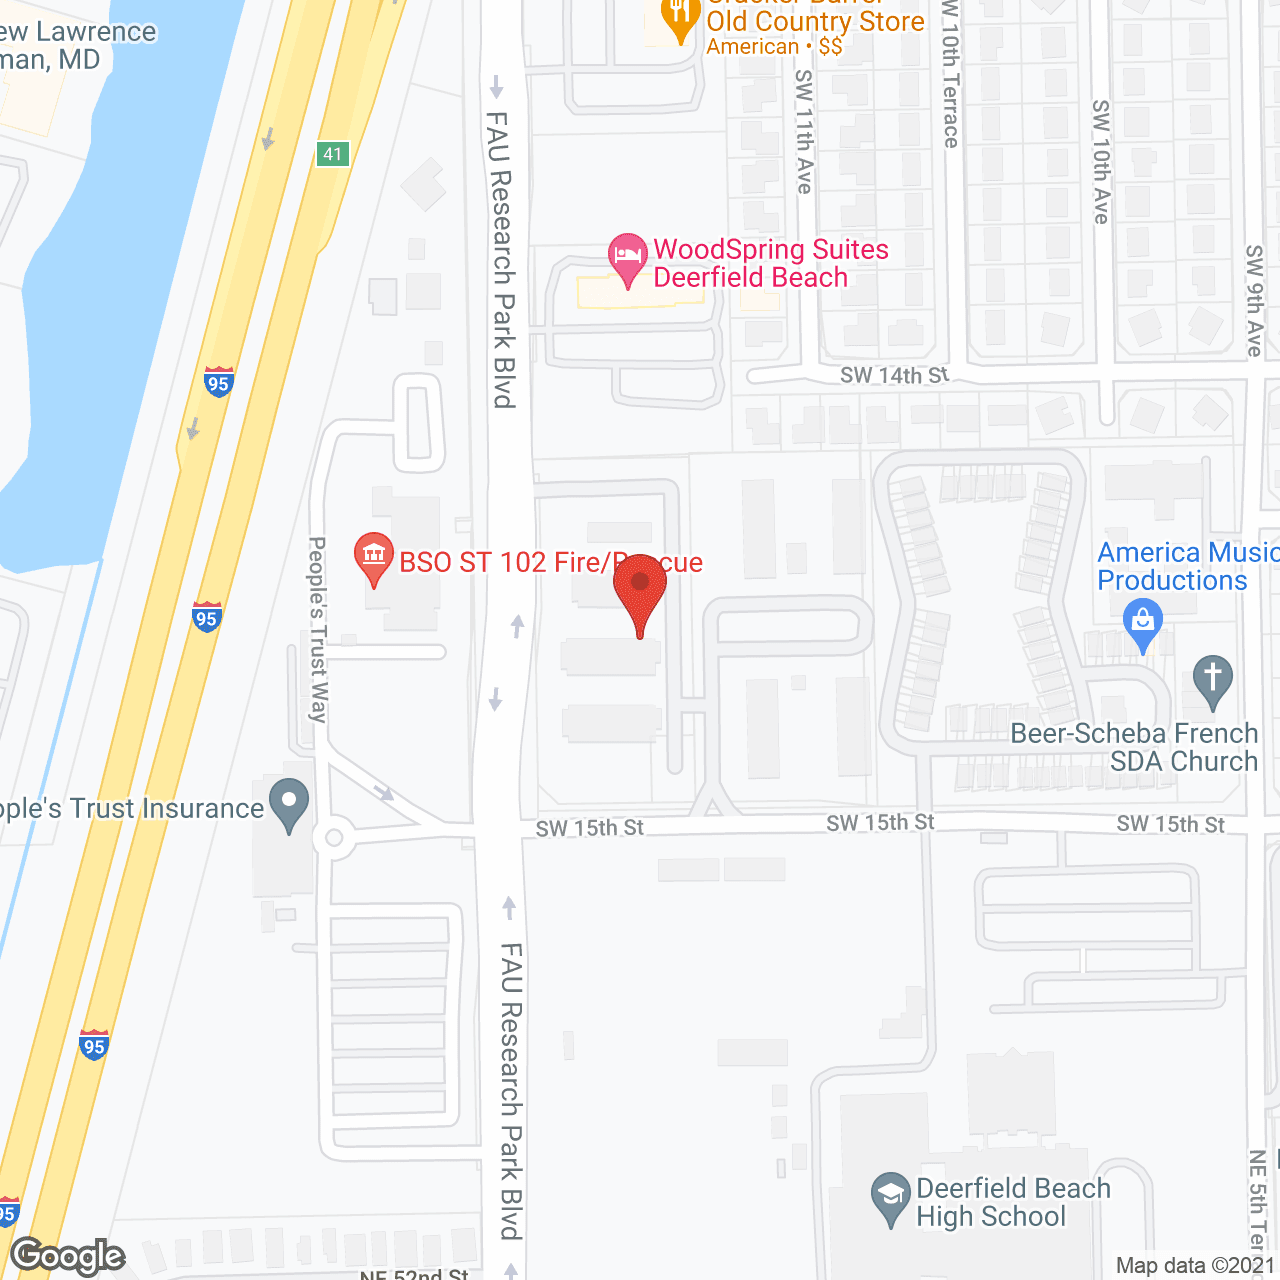 Praxis Ii-Dearfield Beach in google map